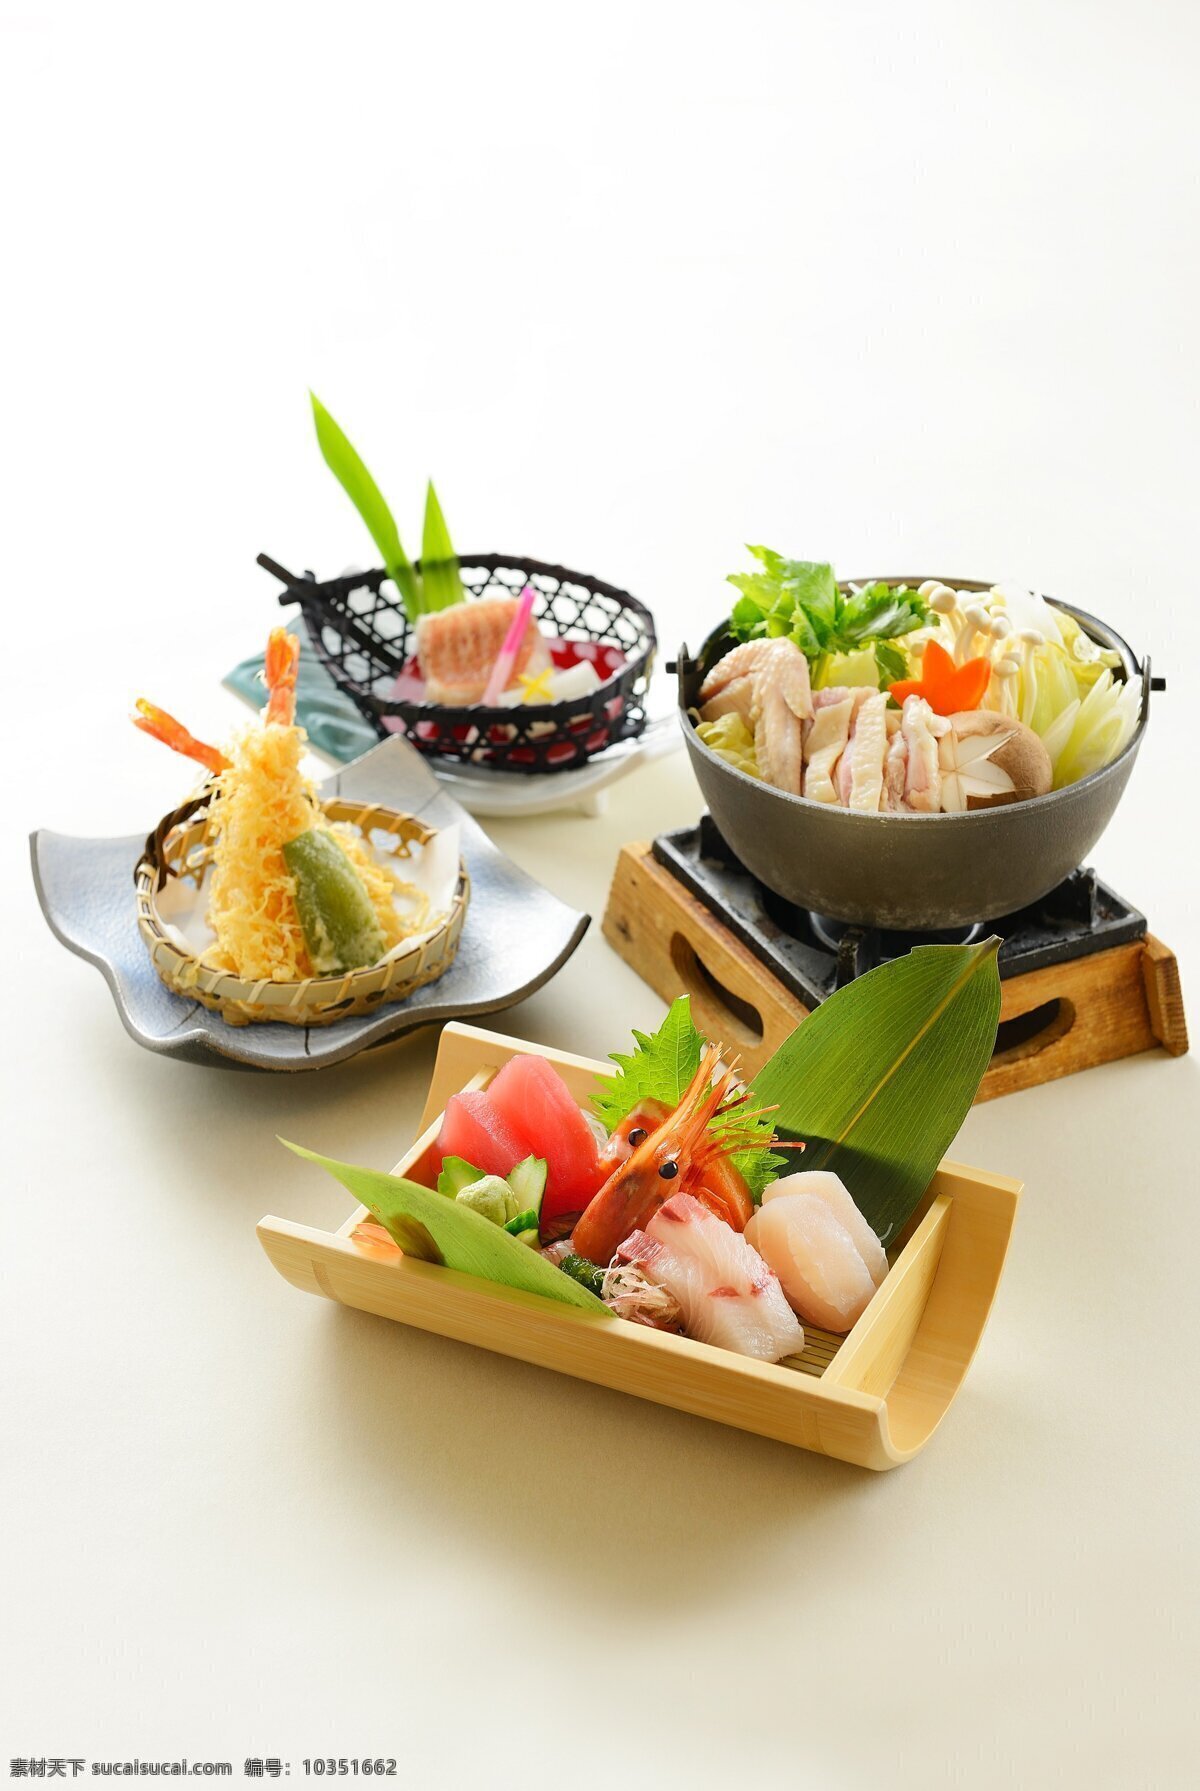 日本料理 料理 天妇罗 套餐 生鱼片 刺身 美食 高档菜 酒店菜 餐饮 饮食 传统美食 餐饮美食